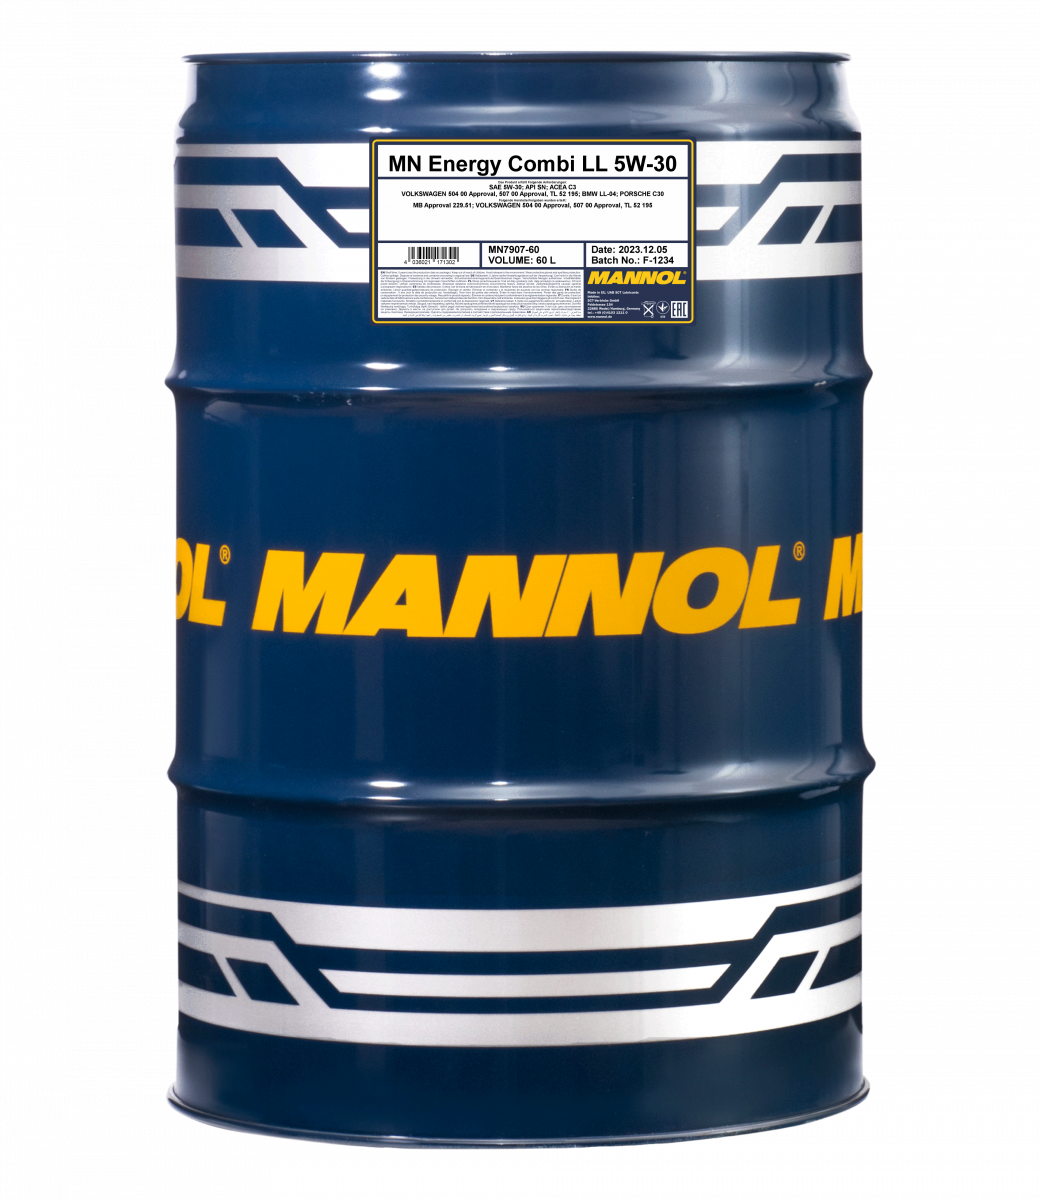 MANNOL Energy Combi LL 5W-30